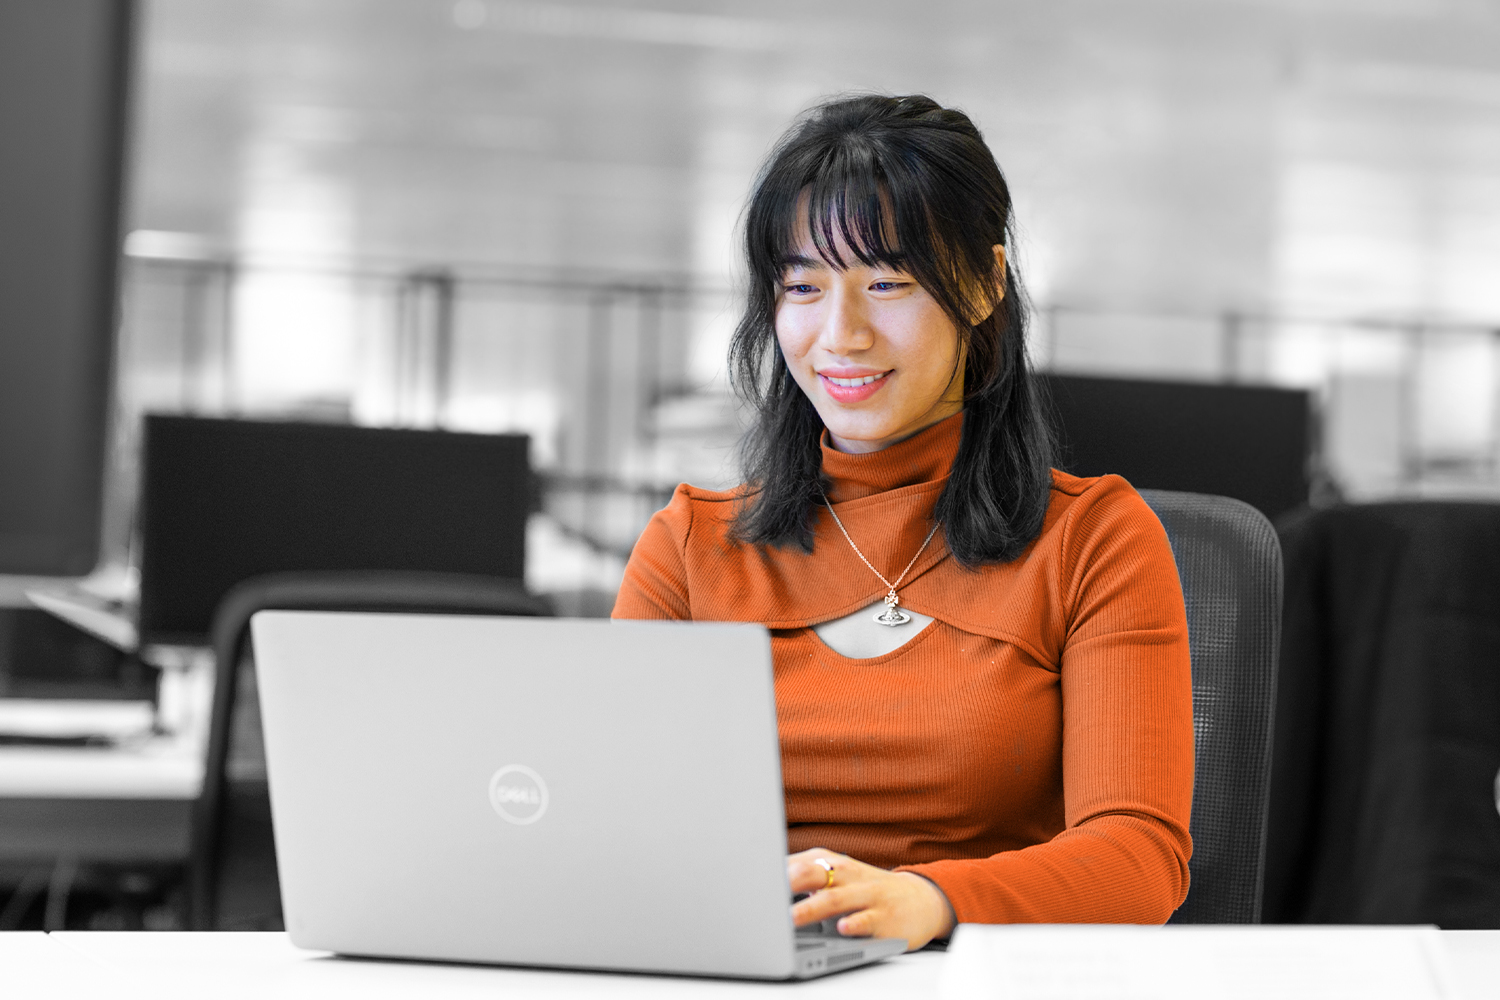 Imagen en blanco y negro, en la que sólo la ropa y el tono de la piel aparecen en color. Una mujer joven con un top naranja trabaja con un ordenador portátil. 